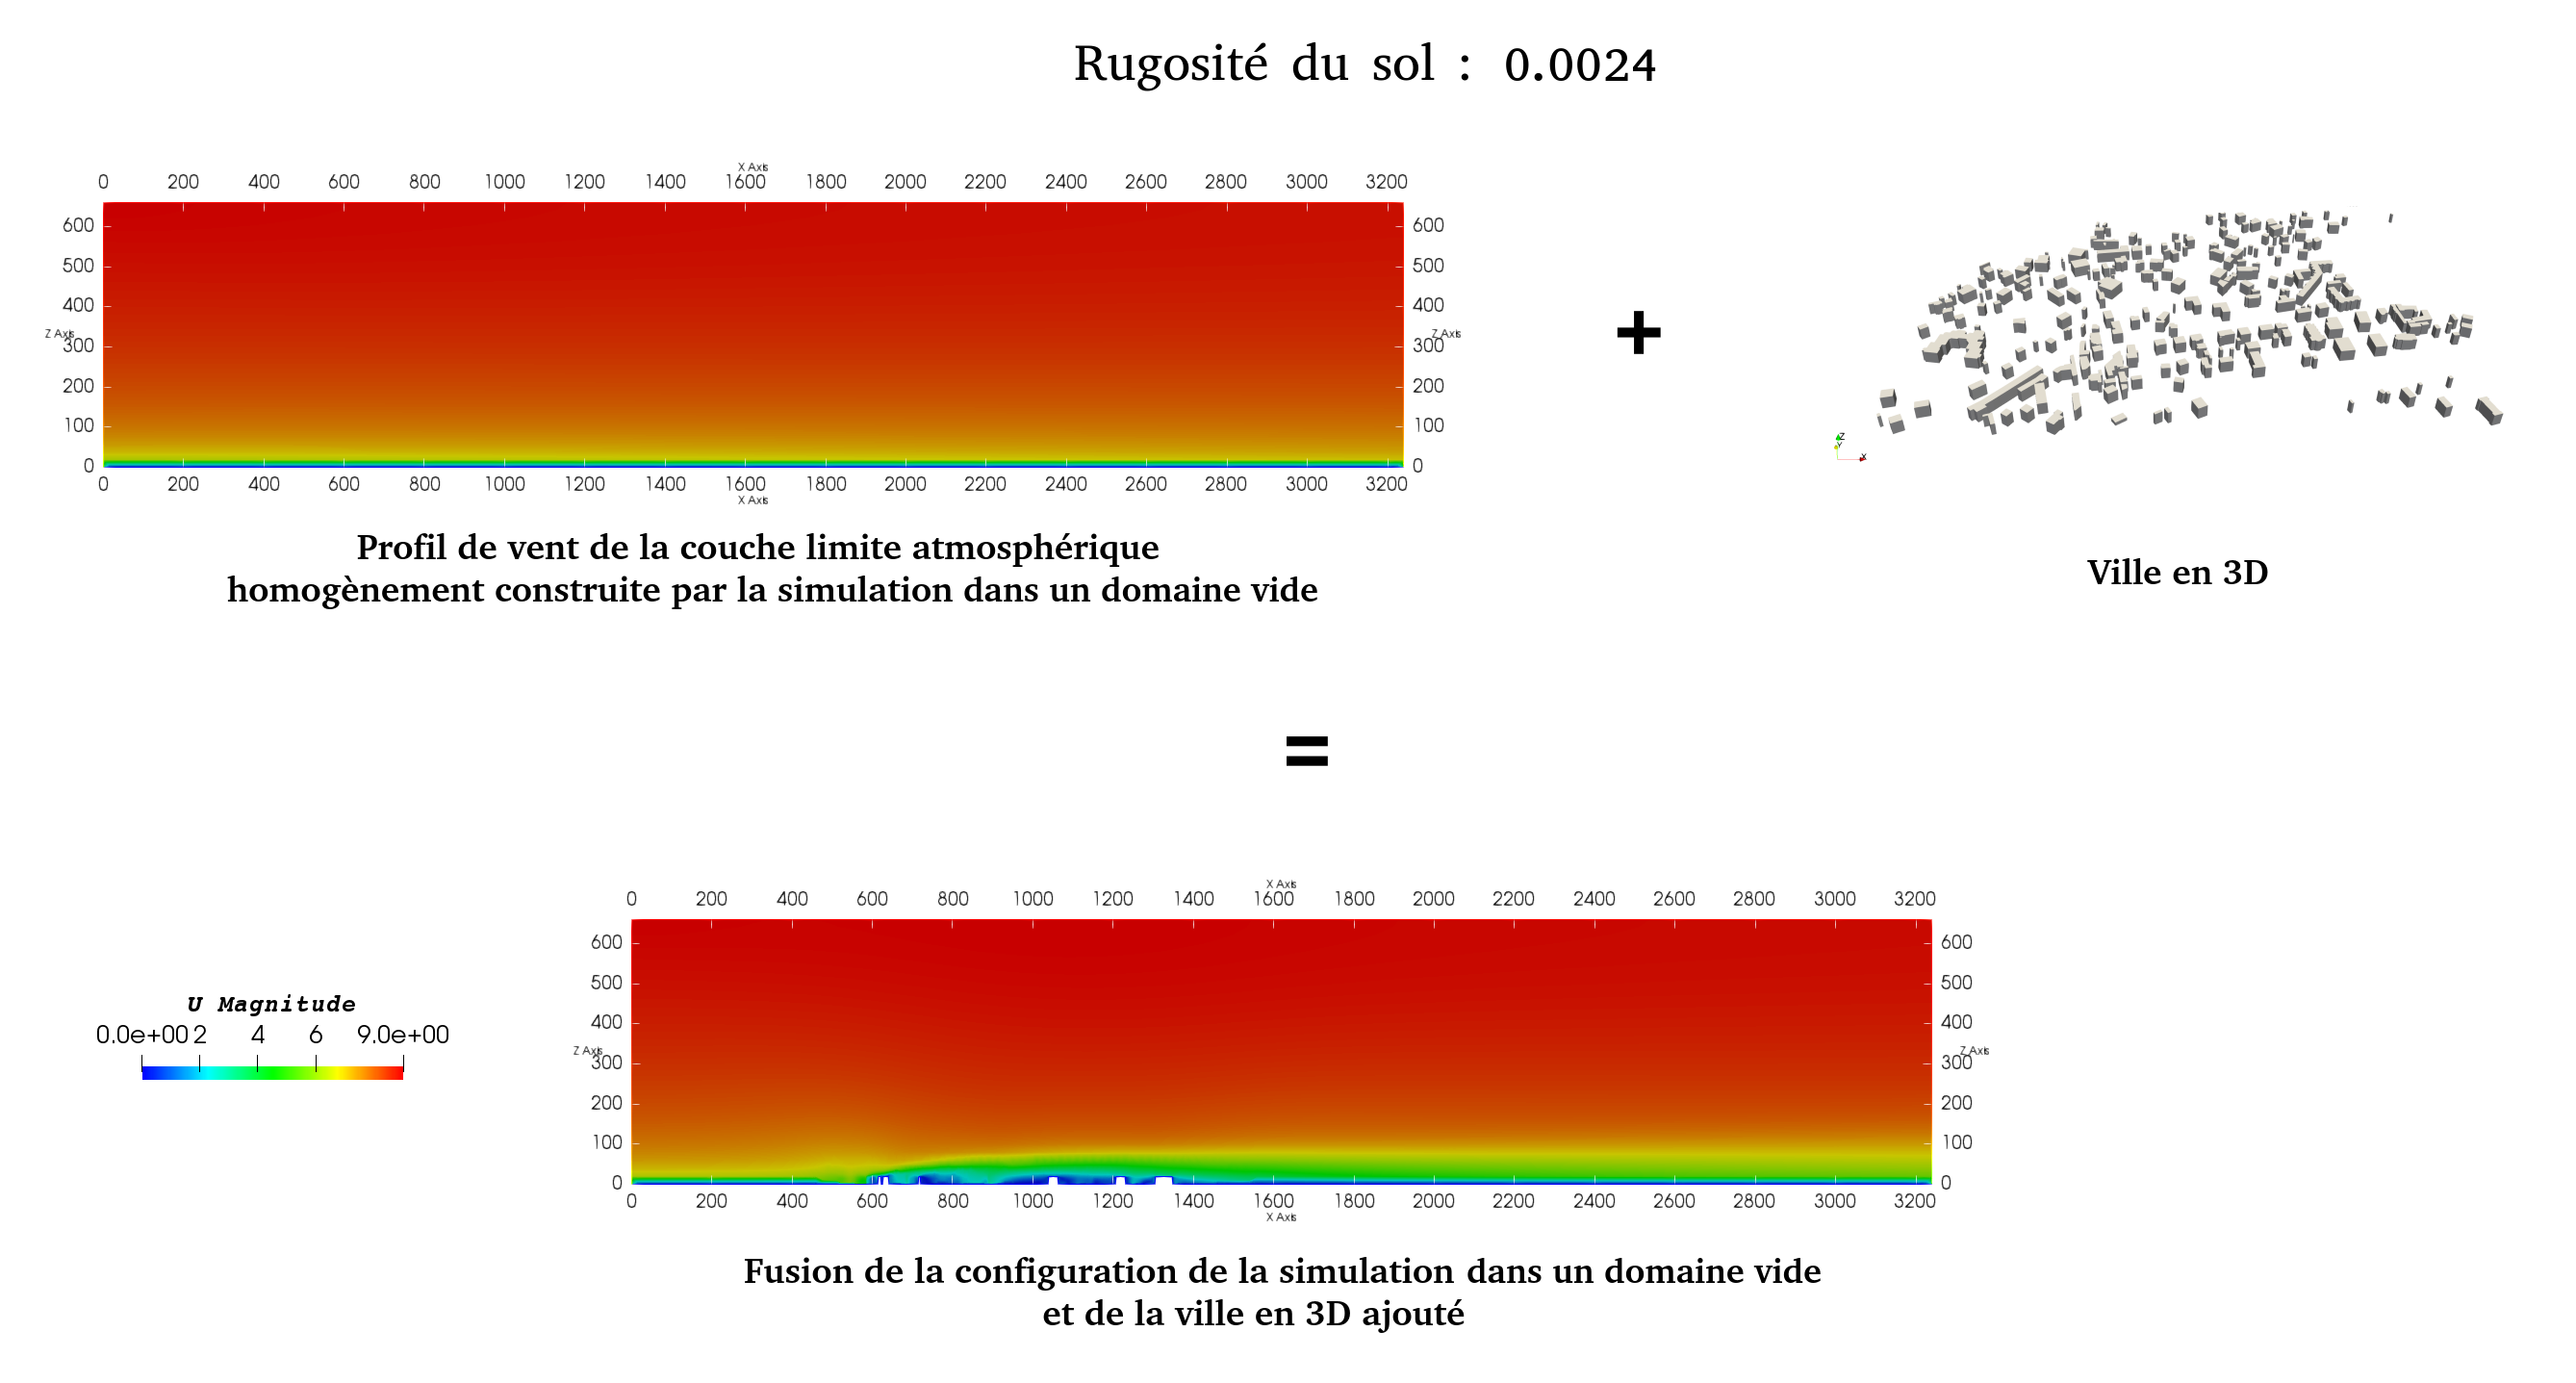 fusion_de_configurations_pour_simulation_rugosite_0.0024